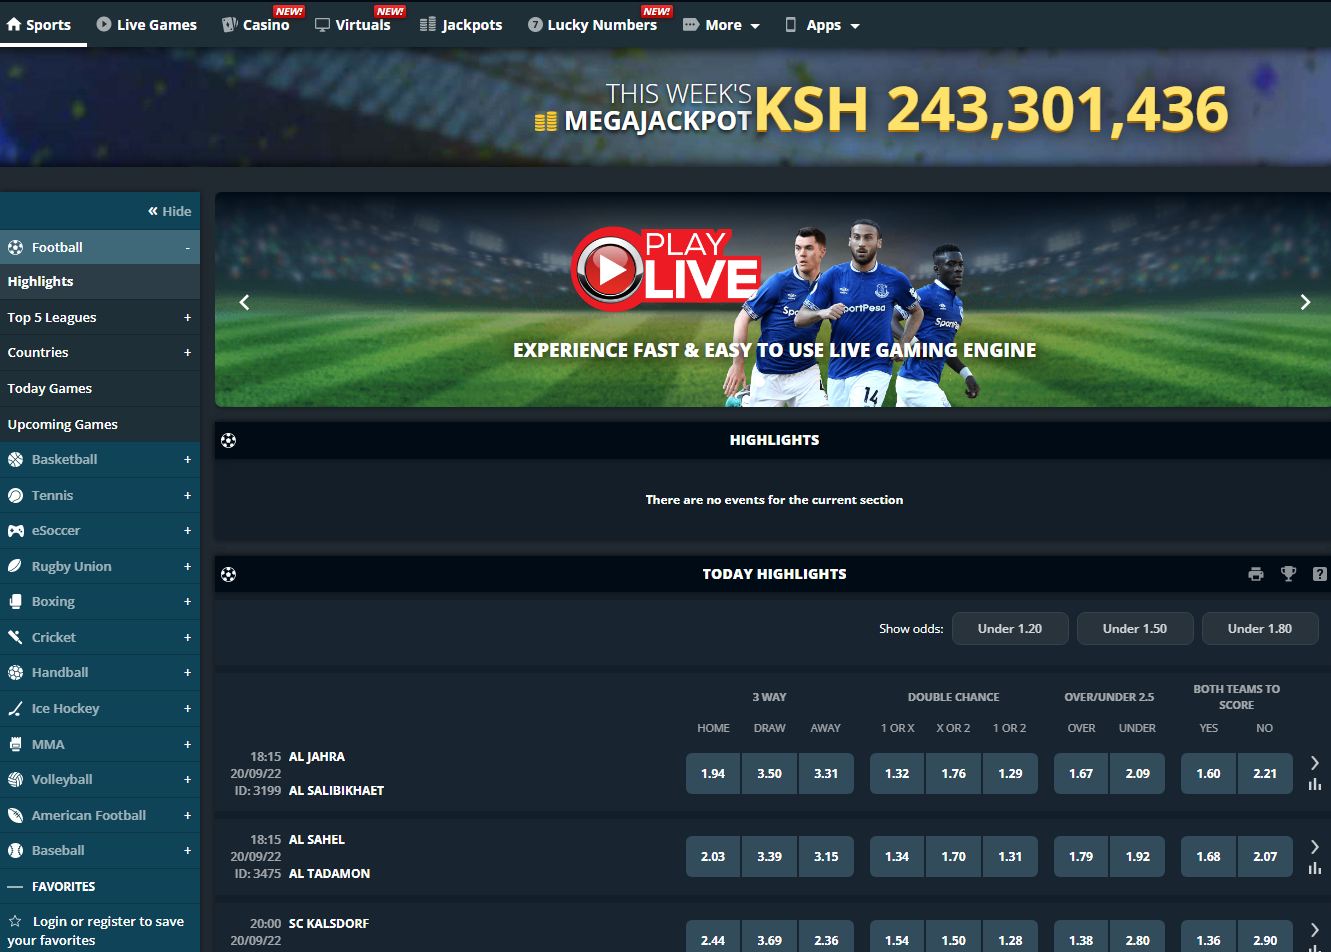 Visit Sportpesa Kenya Website